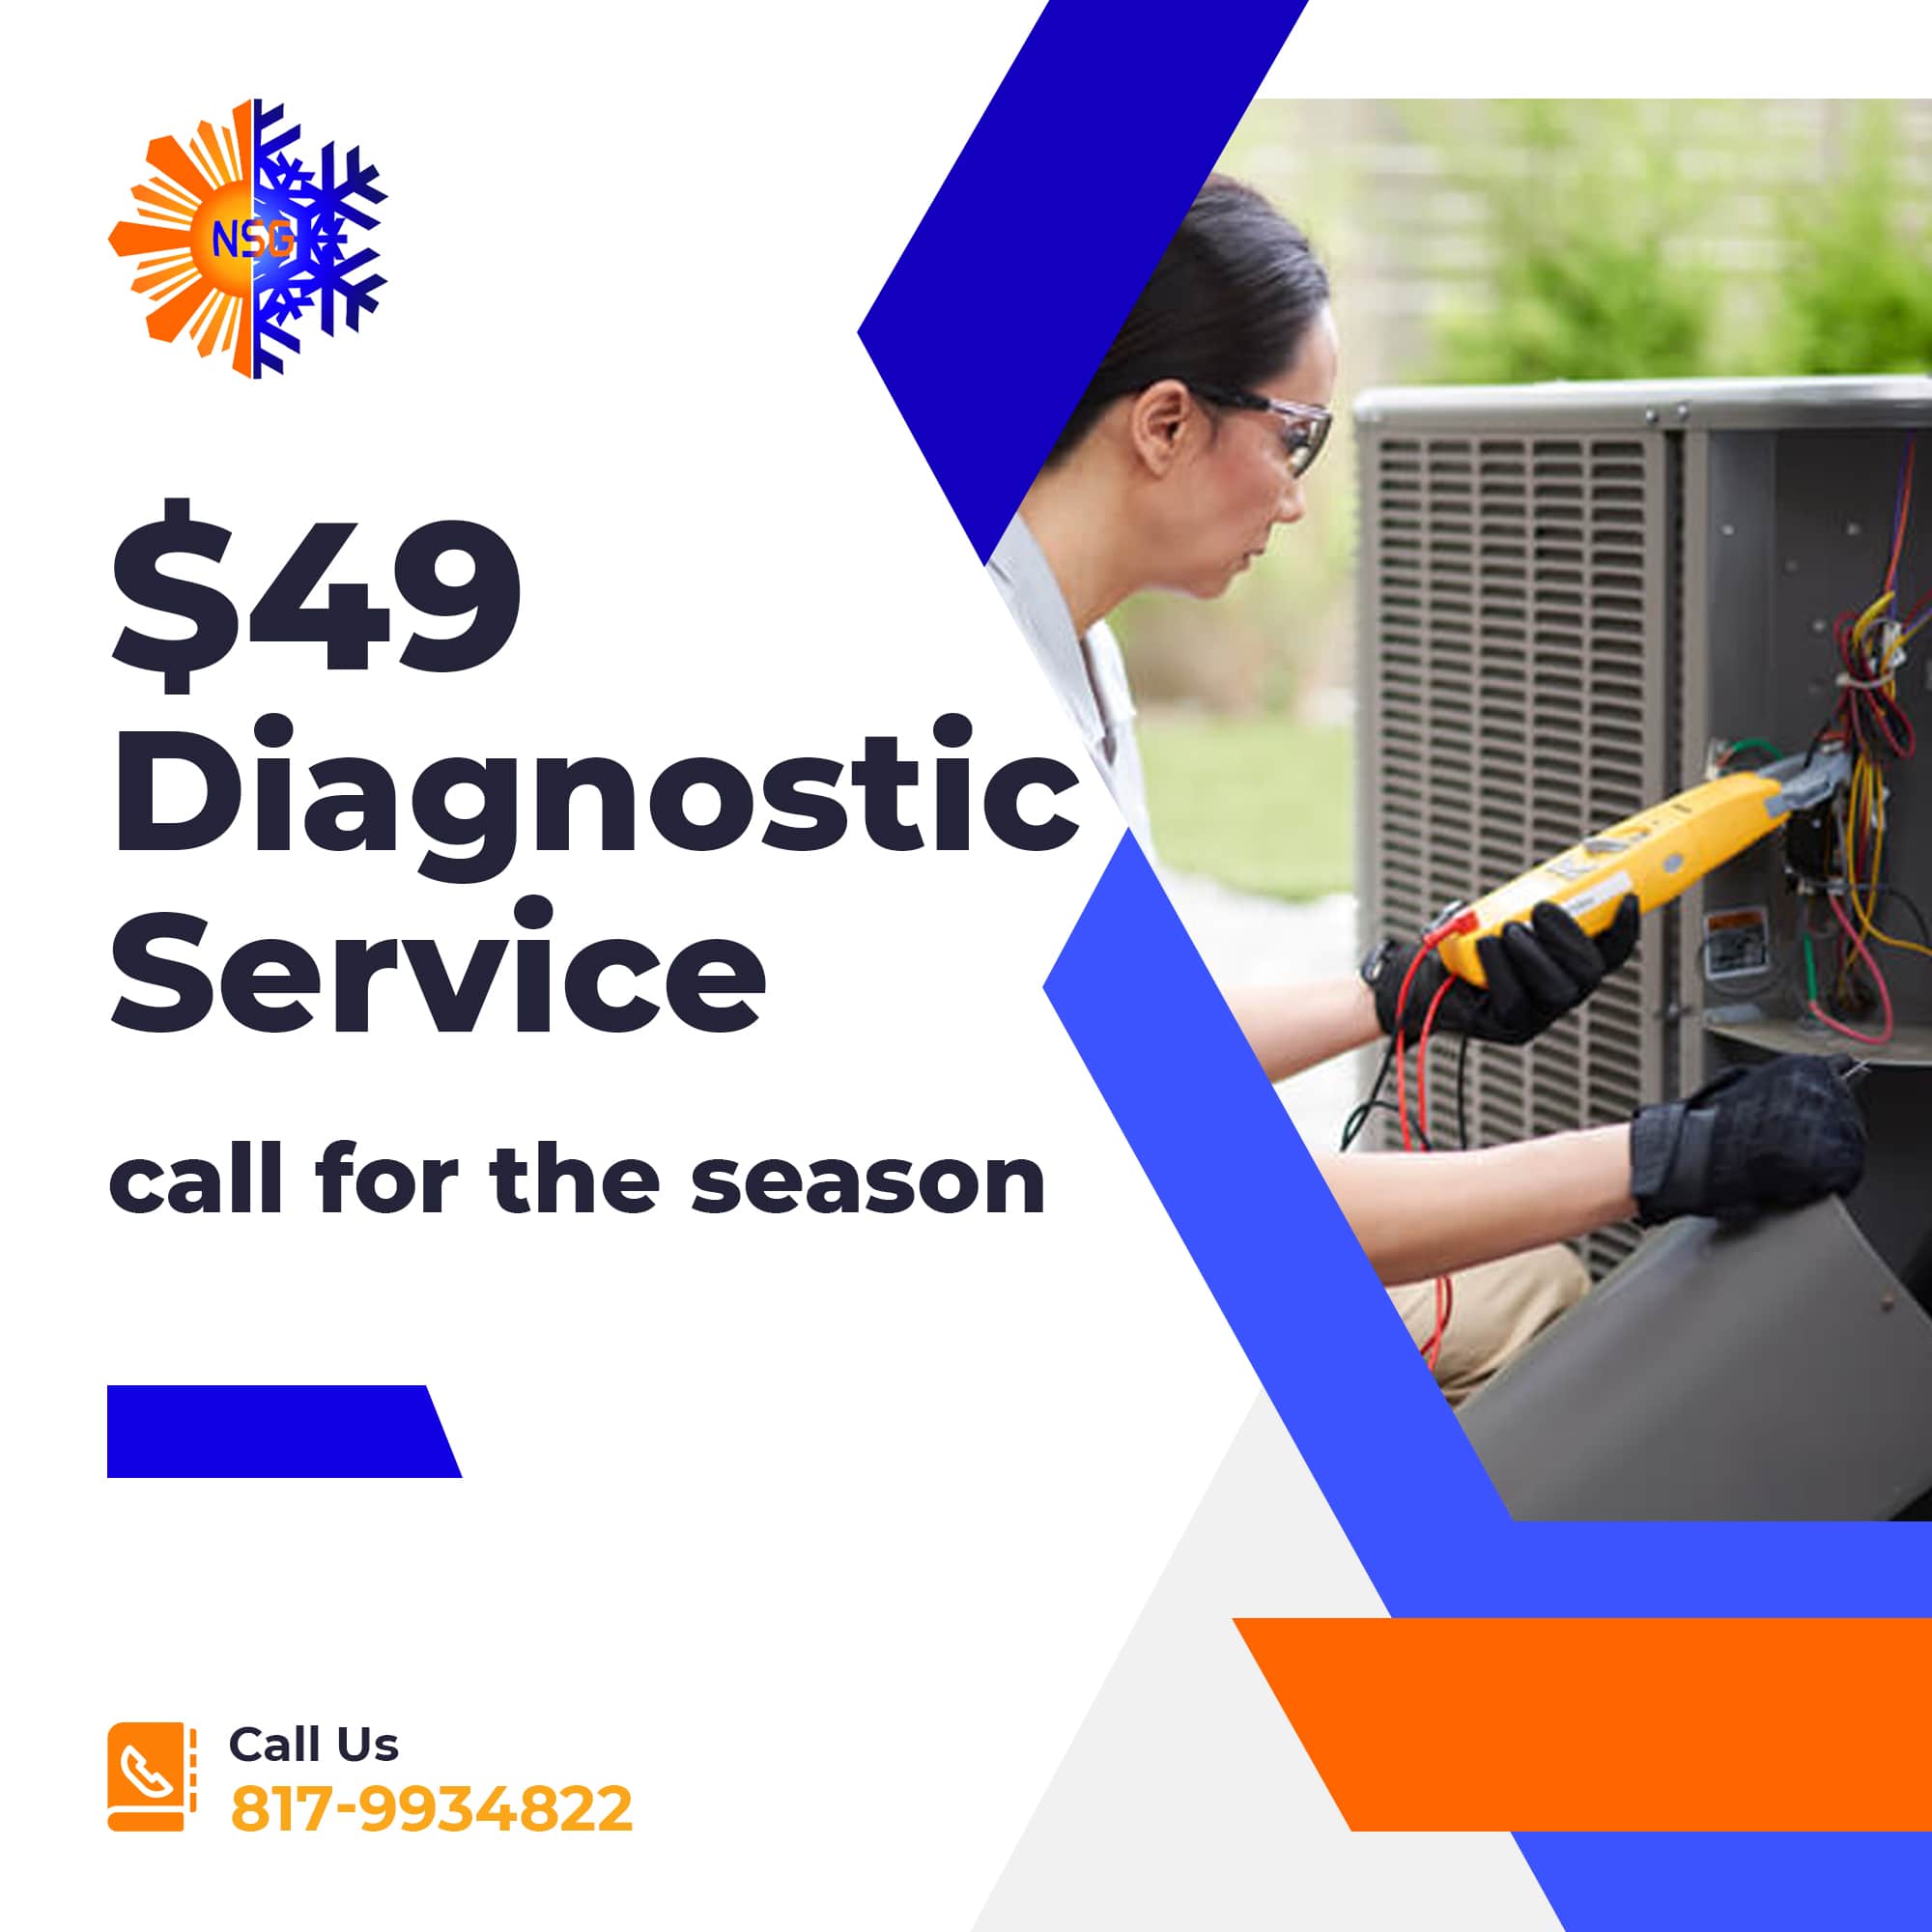 $49 Diagnostic Service call for the season